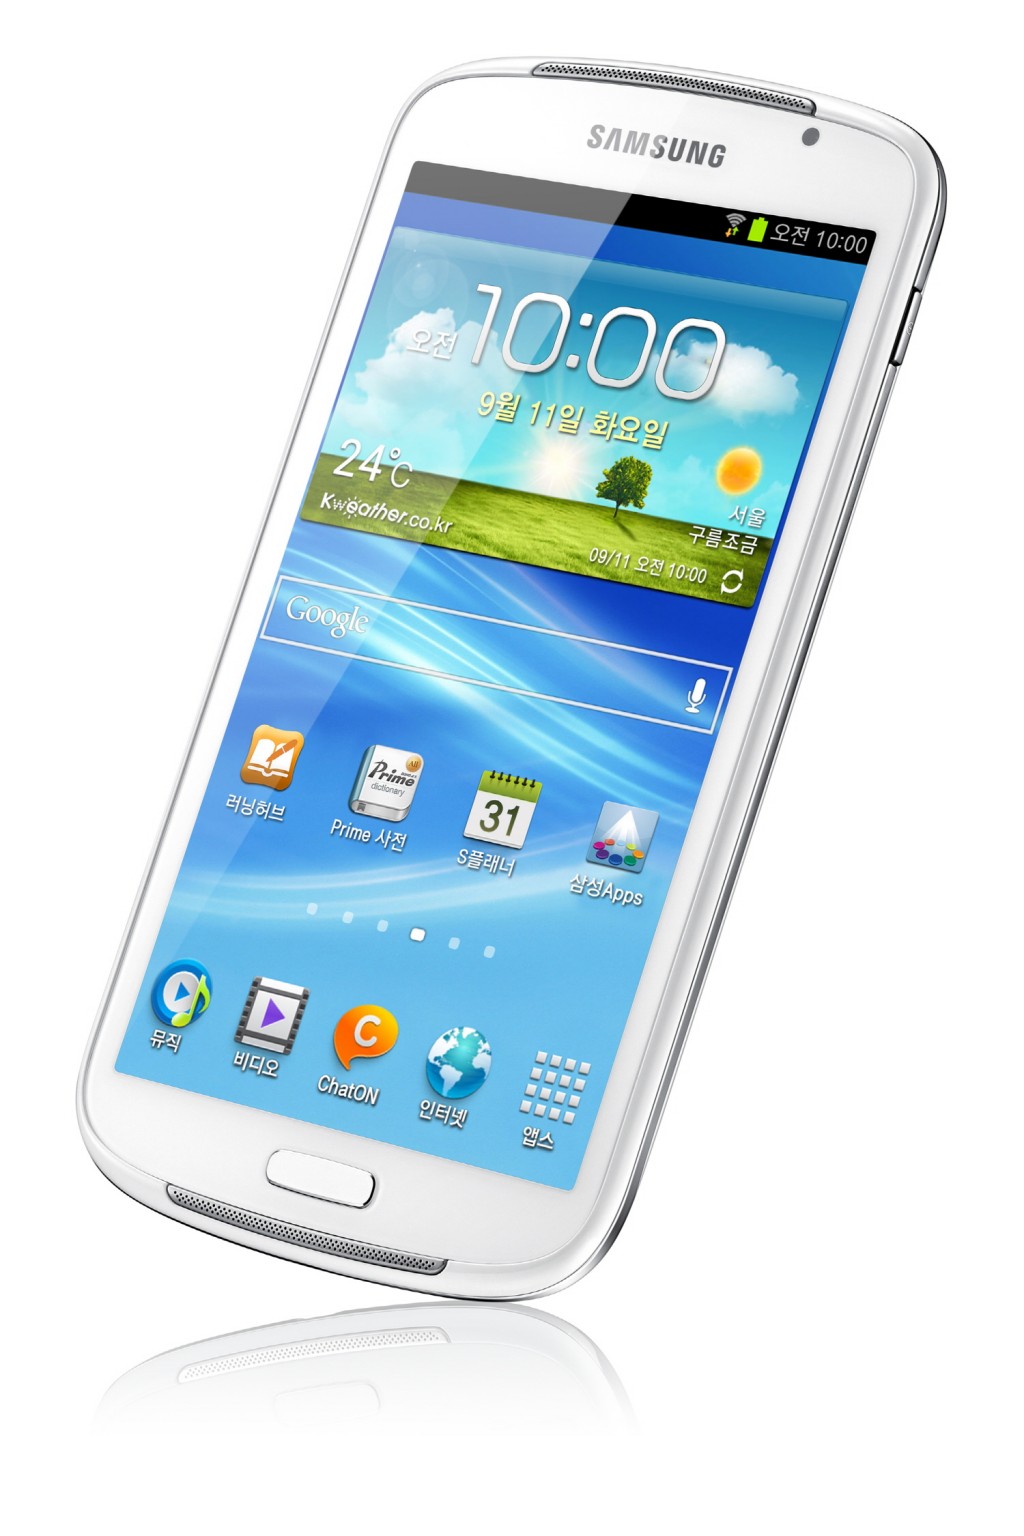 Samsung anuncia el Galaxy Player de 5.8 pulgadas